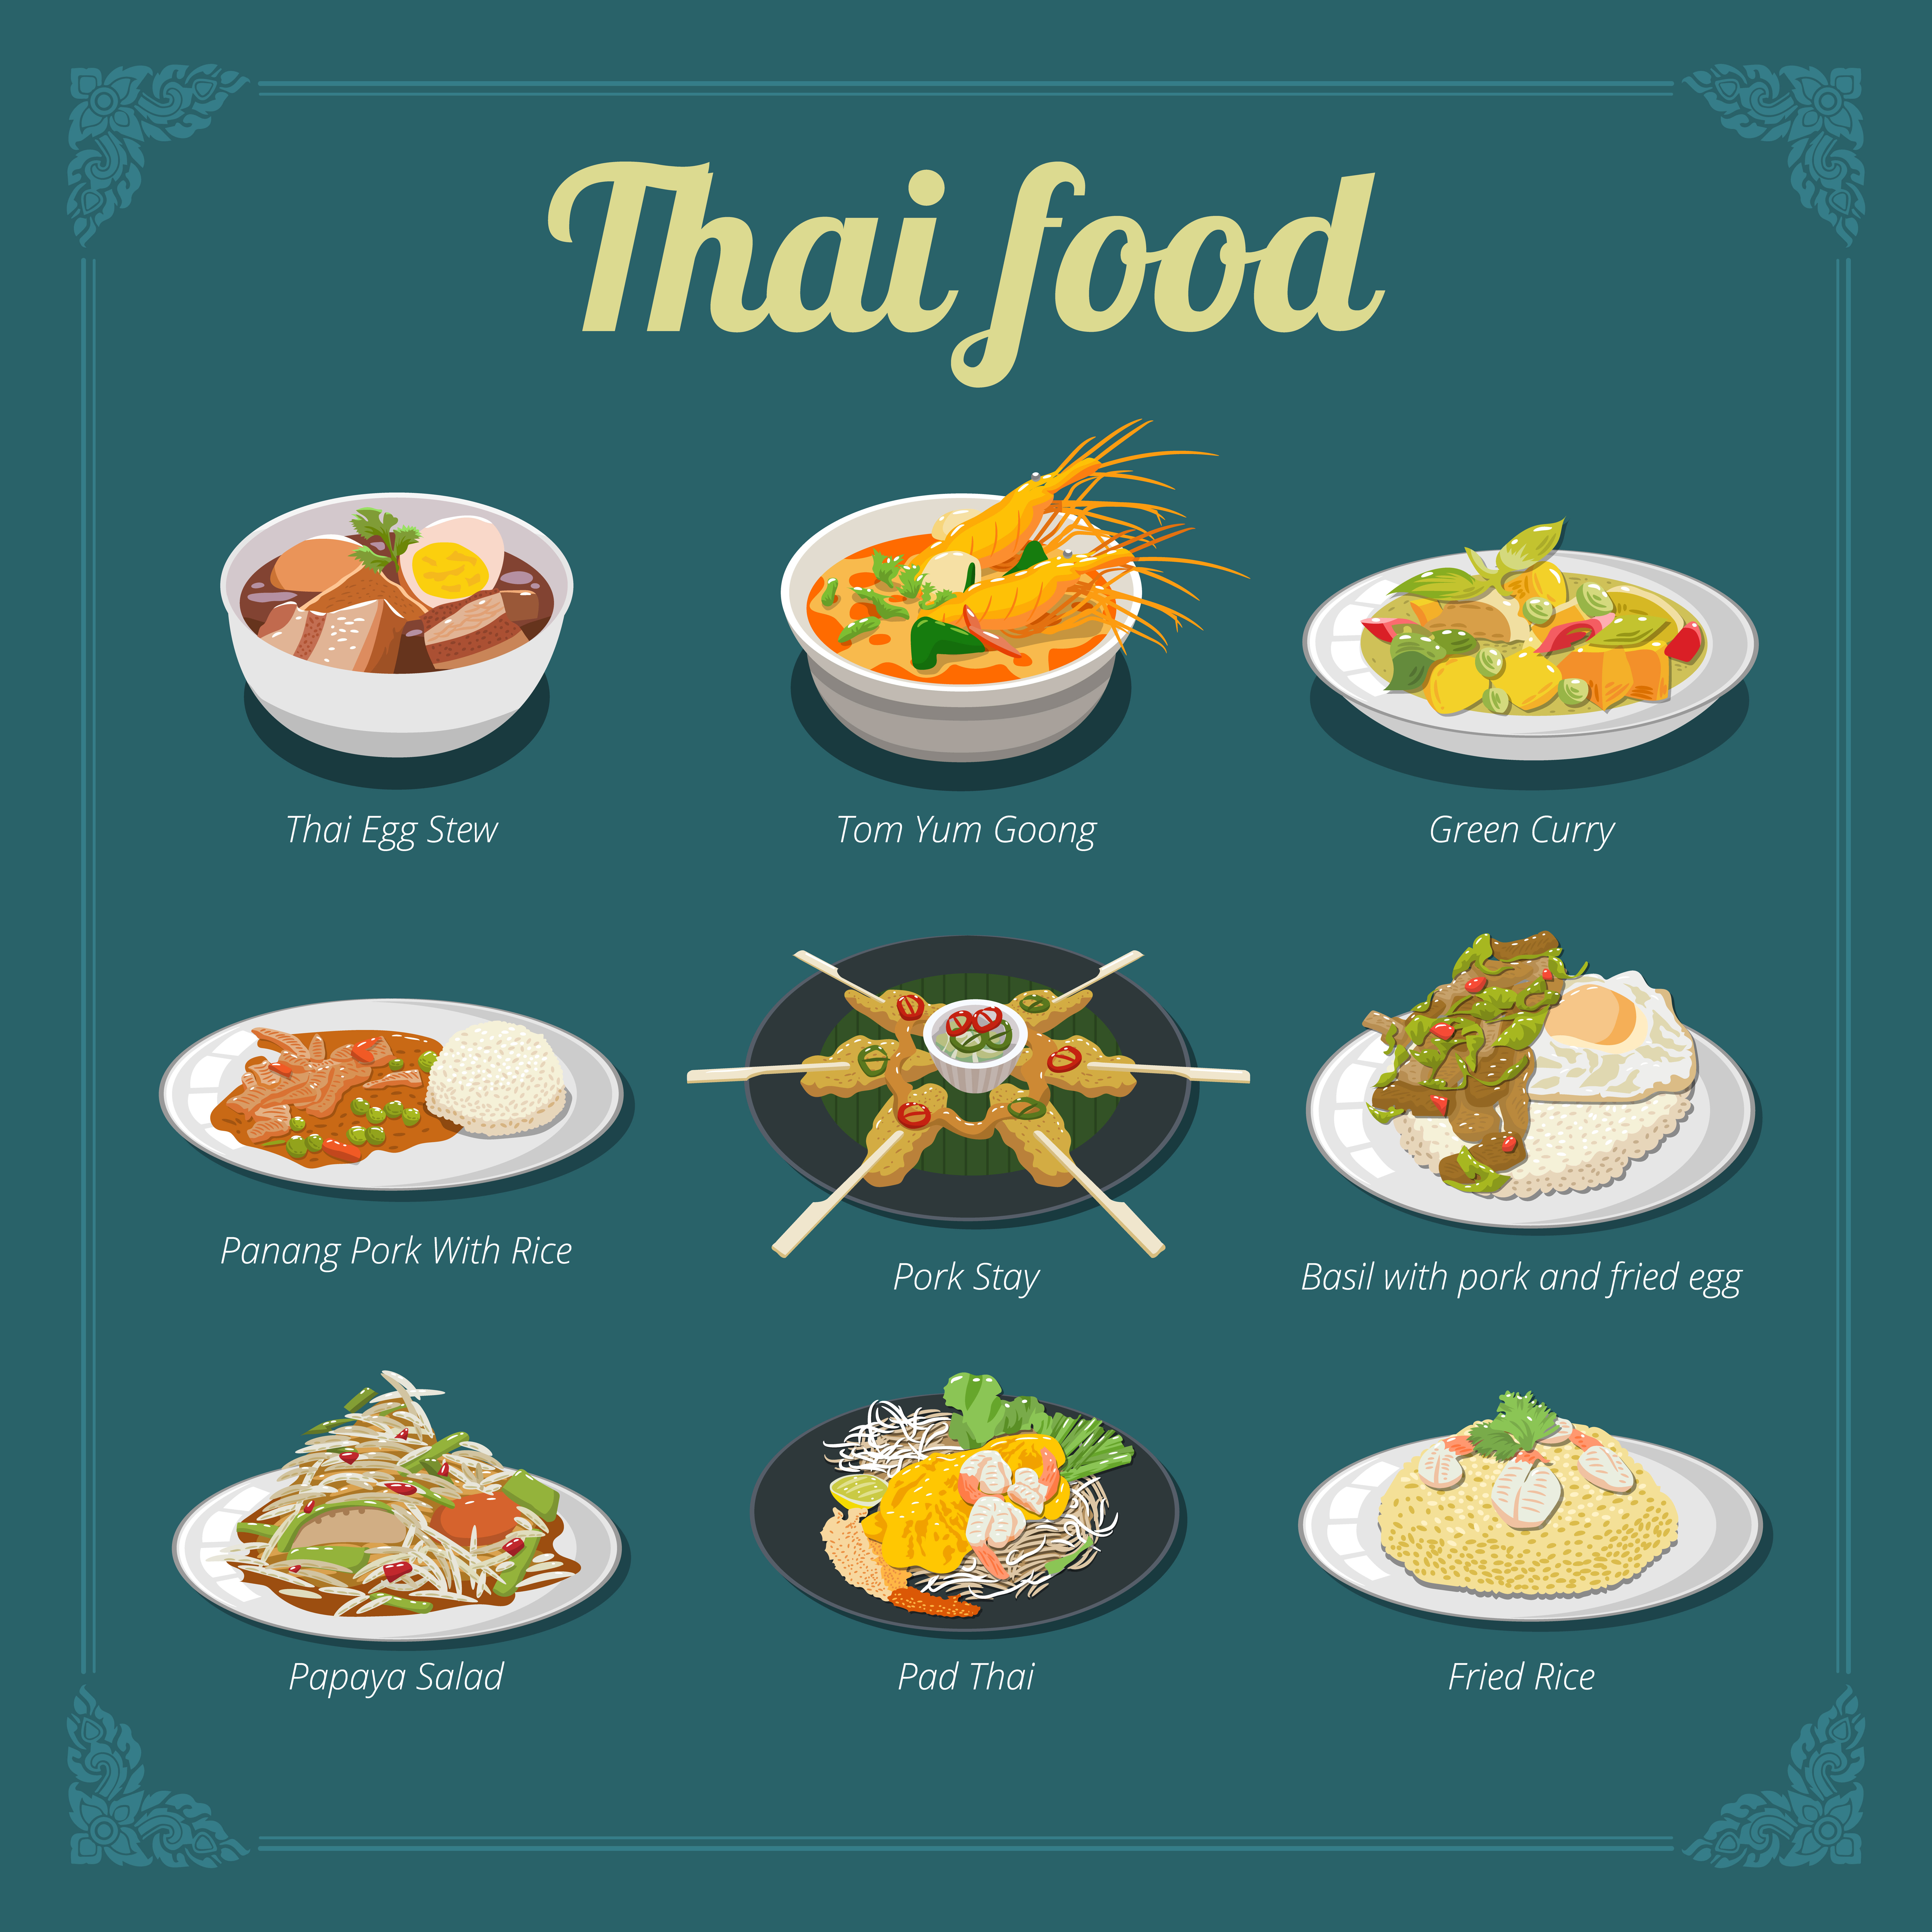 Thai Food Menu Design Download Free Vectors Clipart Graphics Vector Art,What Is Fondant Icing